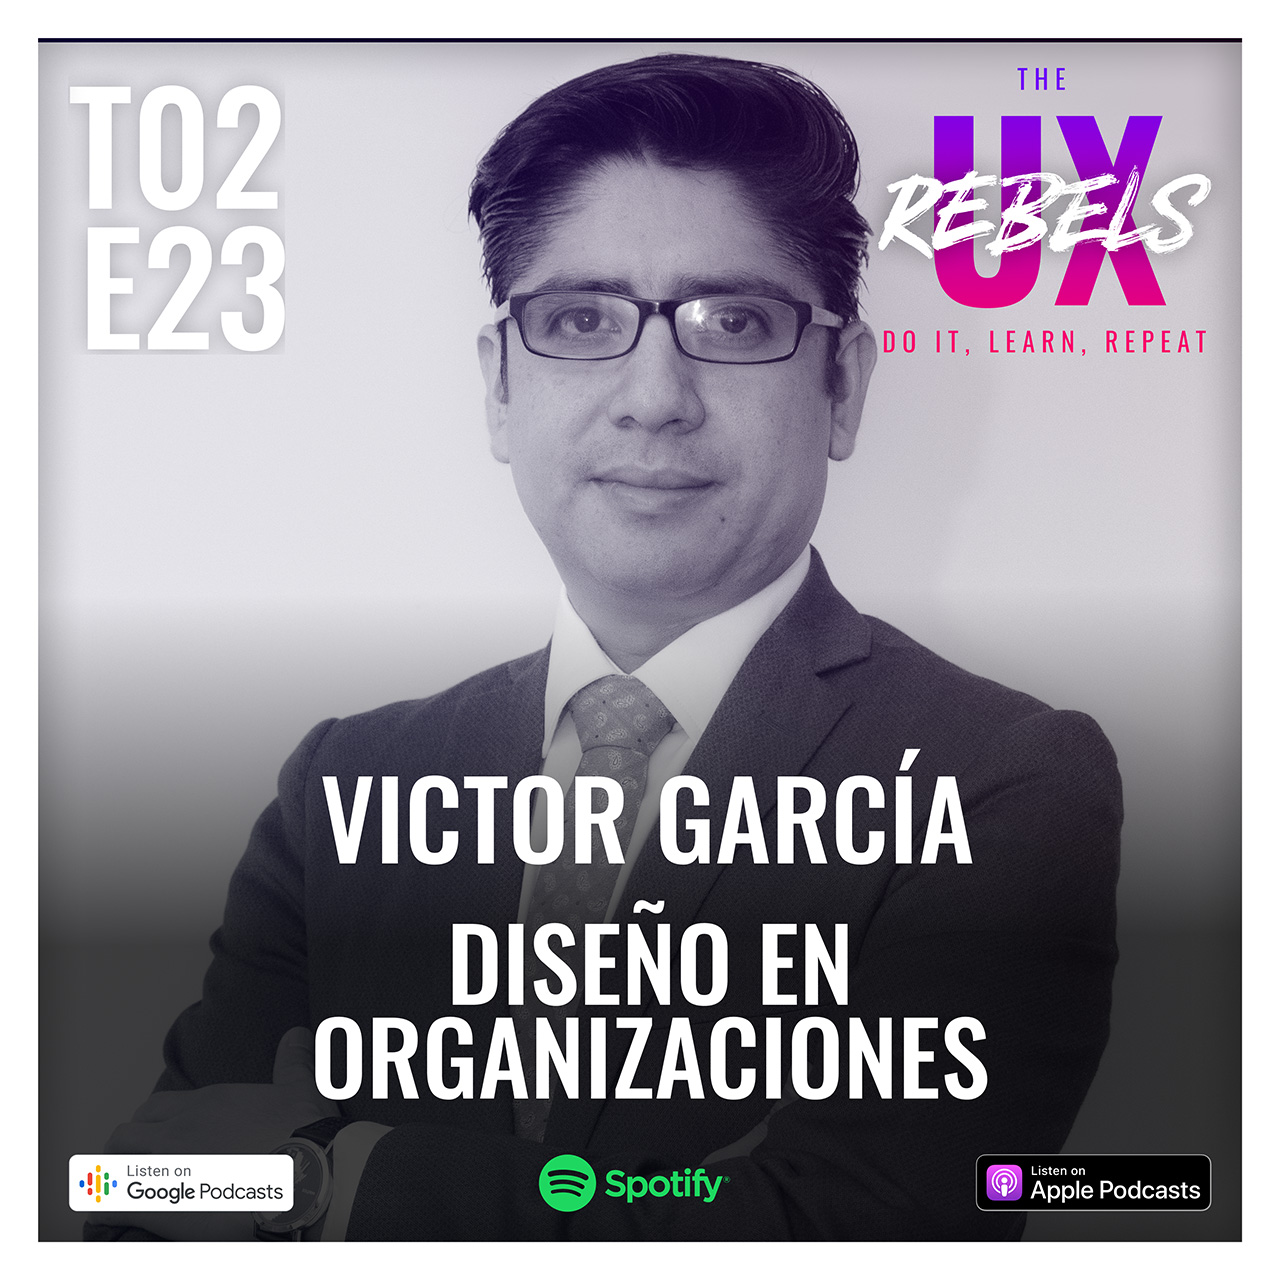 Escucha episodio con Victor García